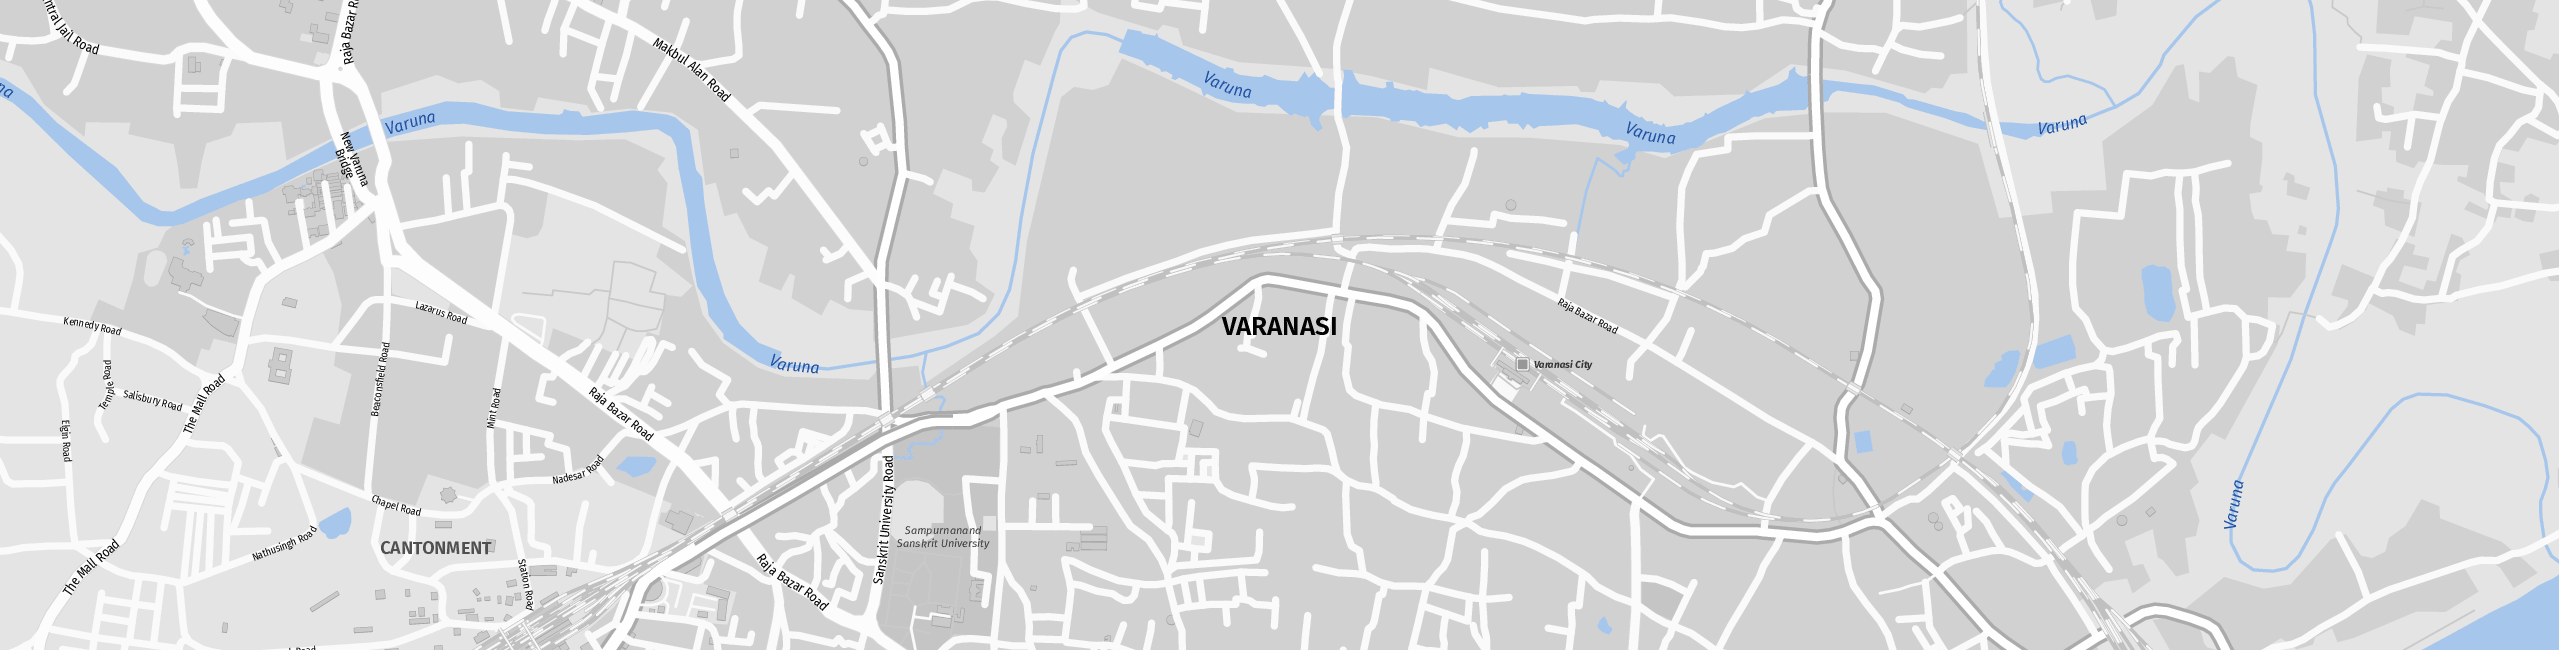 Stadtplan Varanasi zum Downloaden.